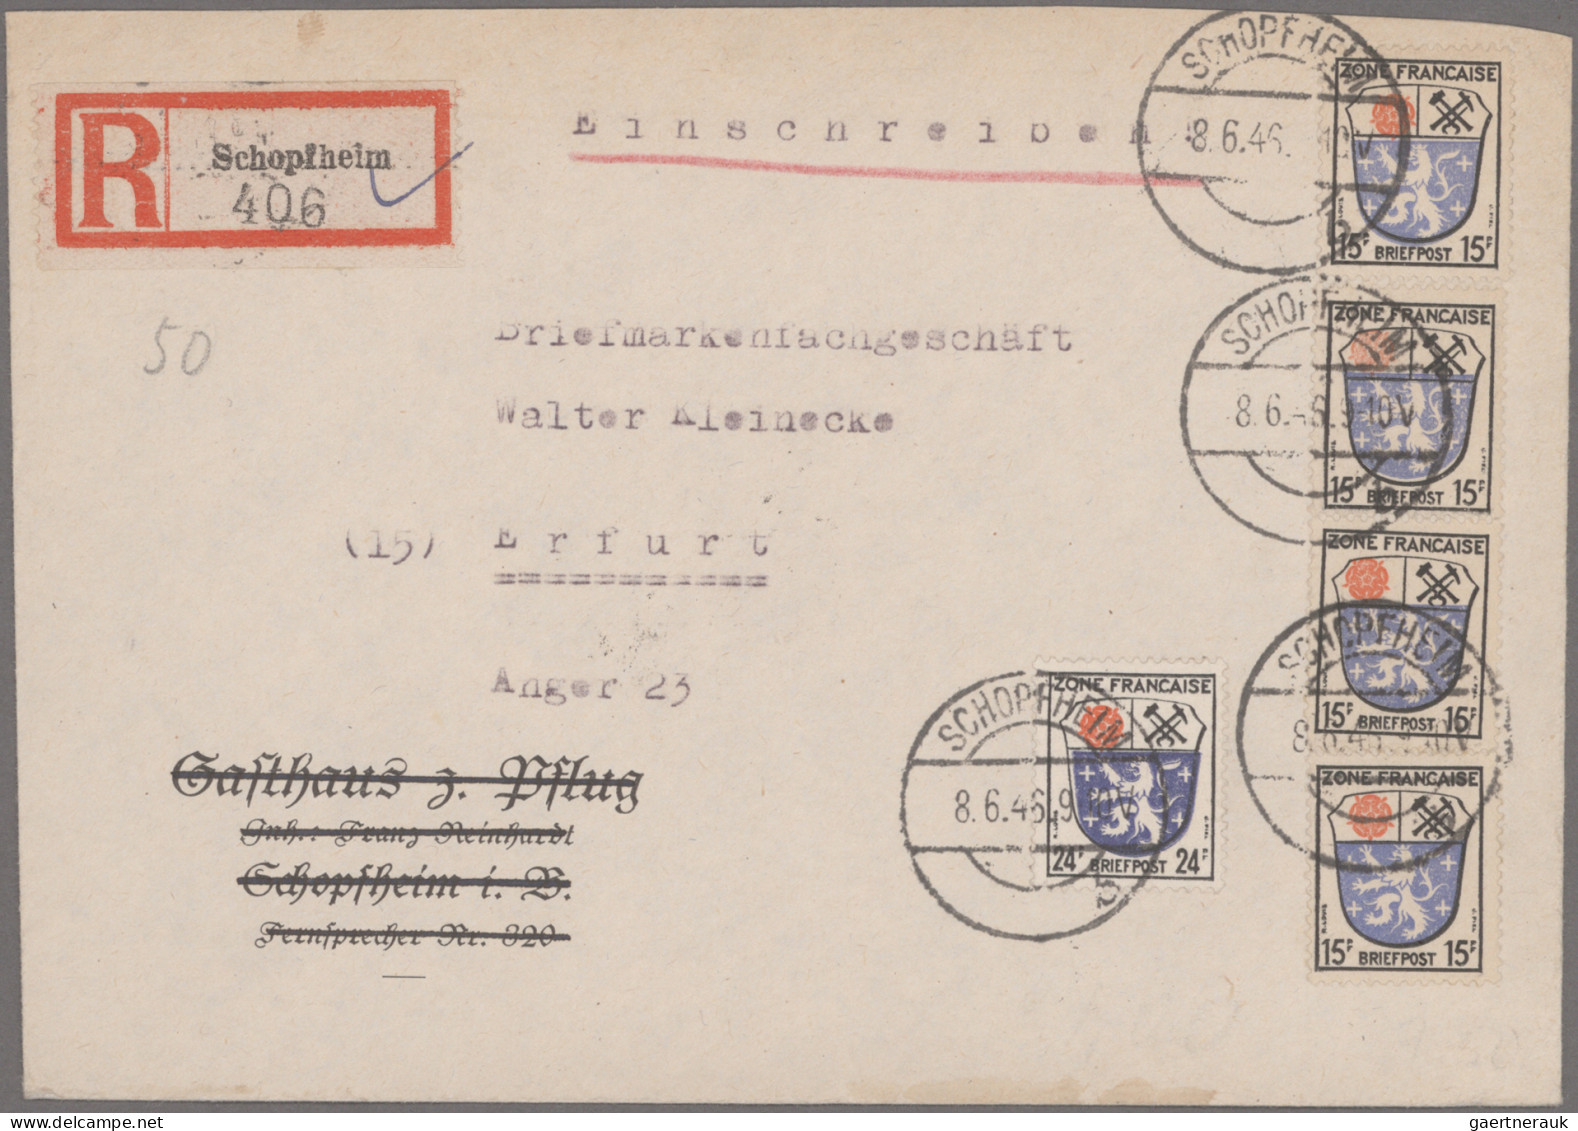 Französische Zone - Baden: 1945/1947, saubere Sammlung von 85 Briefen und Karten